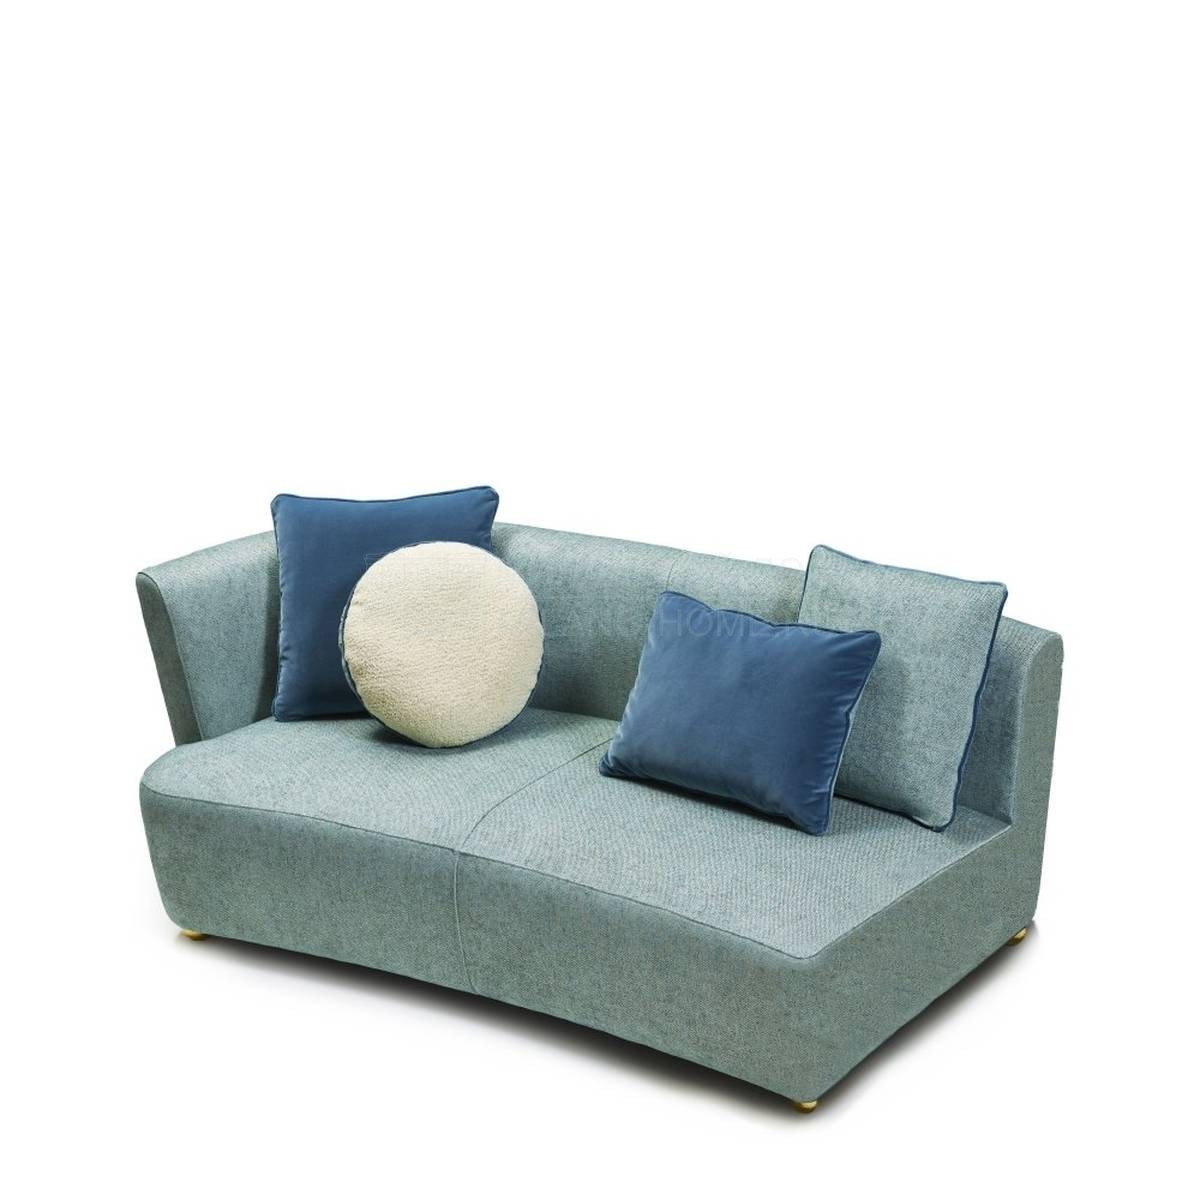 Модульный диван Baia sectional sofa из Италии фабрики MARIONI